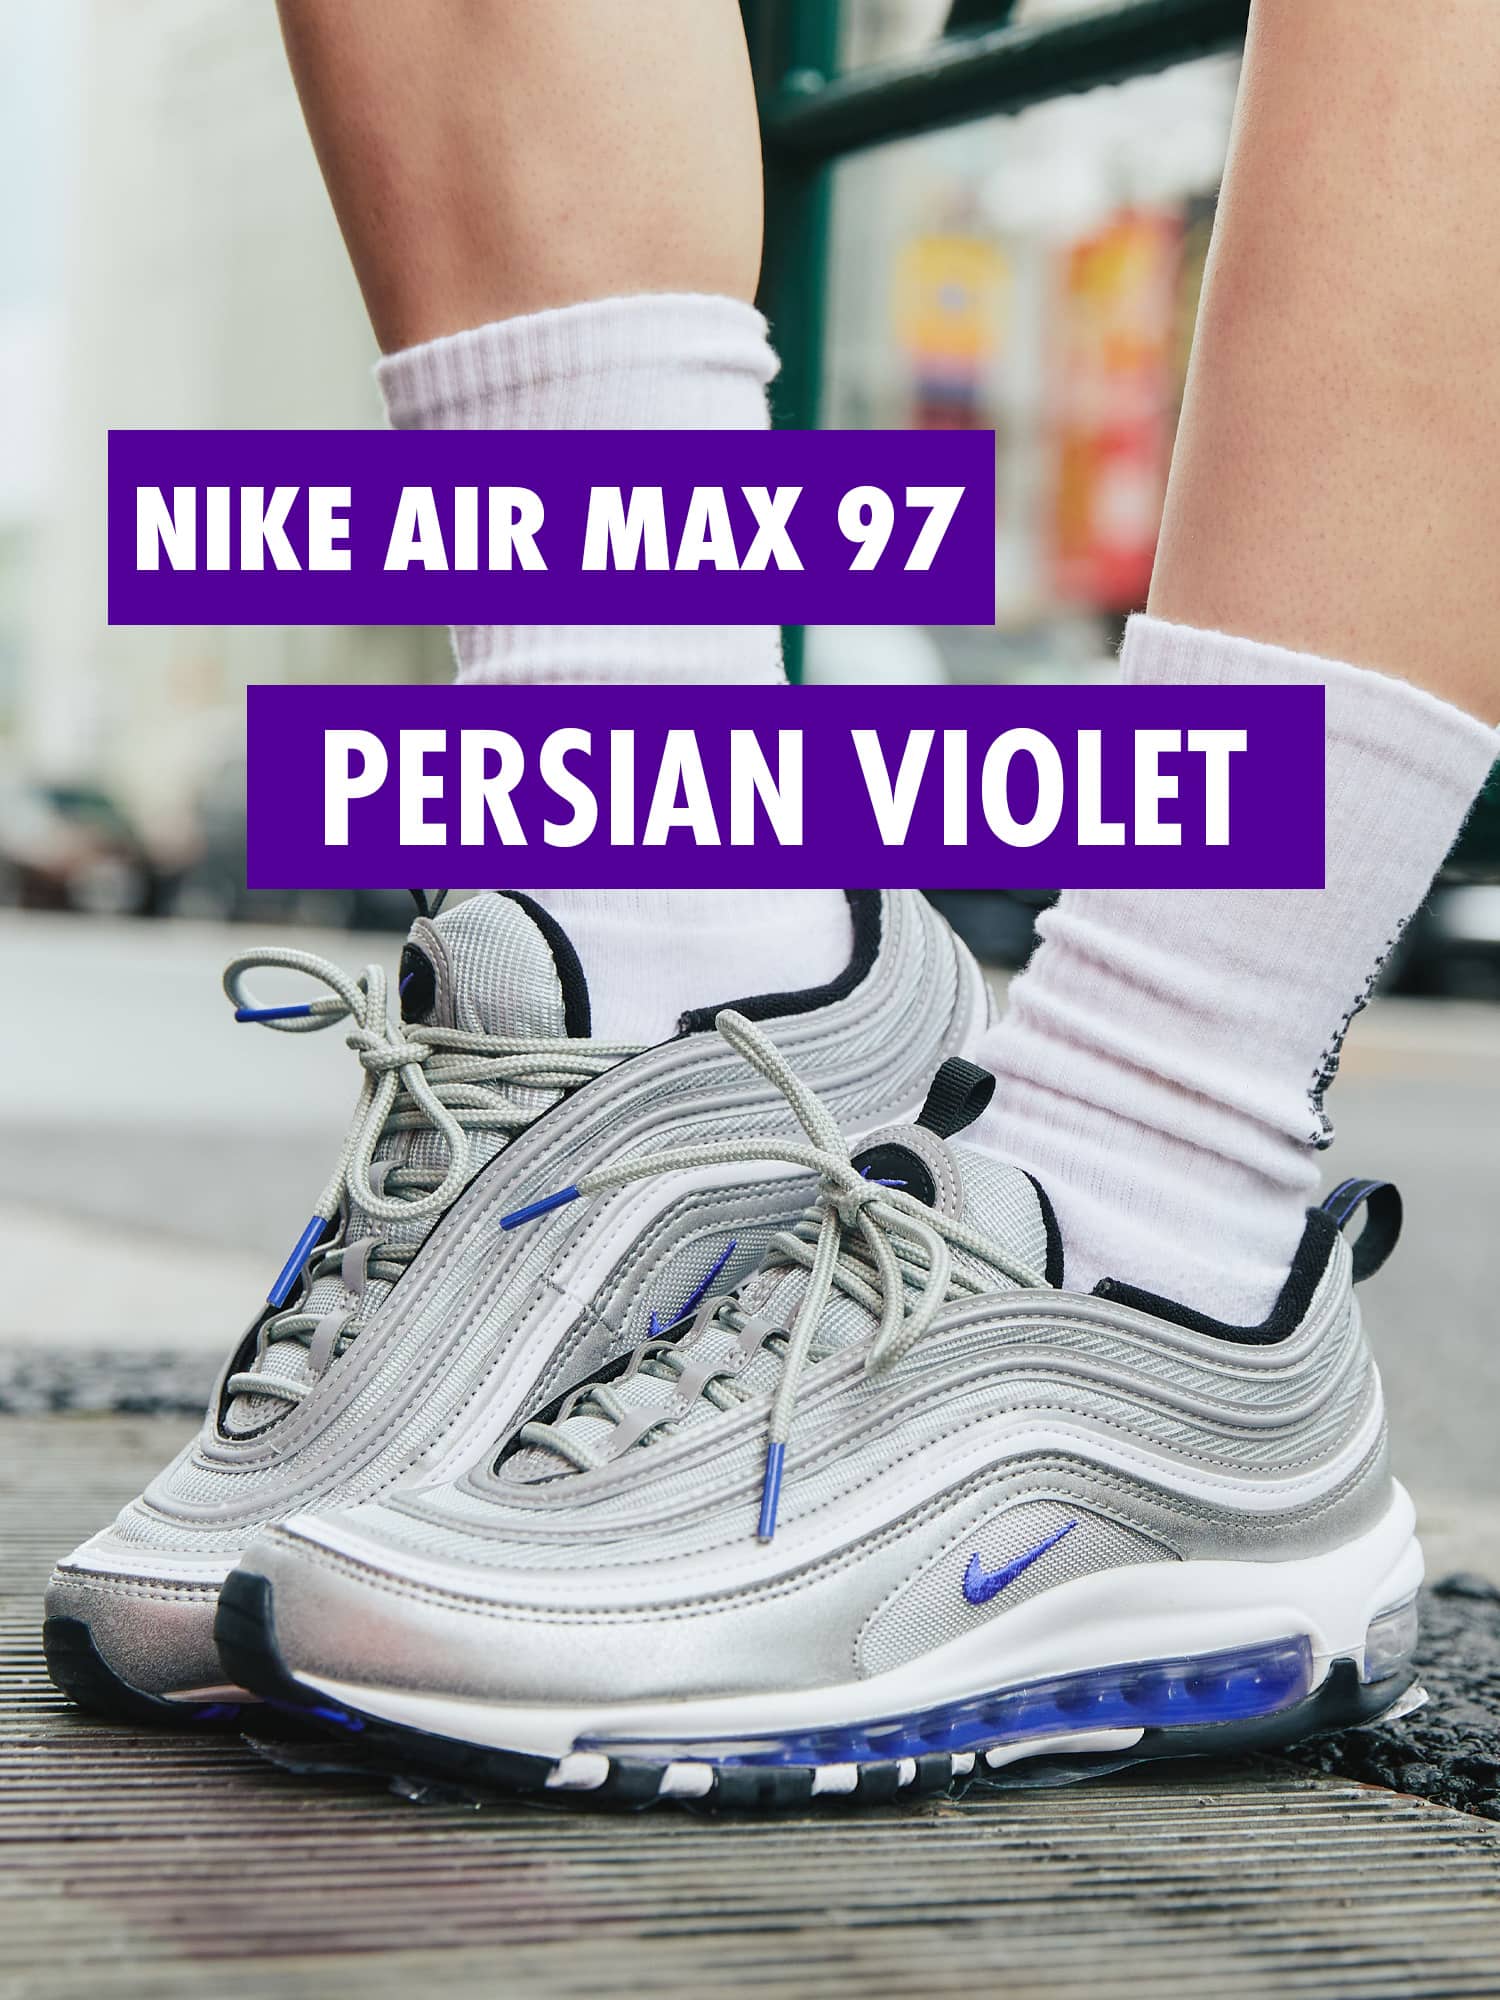 NIKE AIR MAX 97 PERSIAN VIOLET